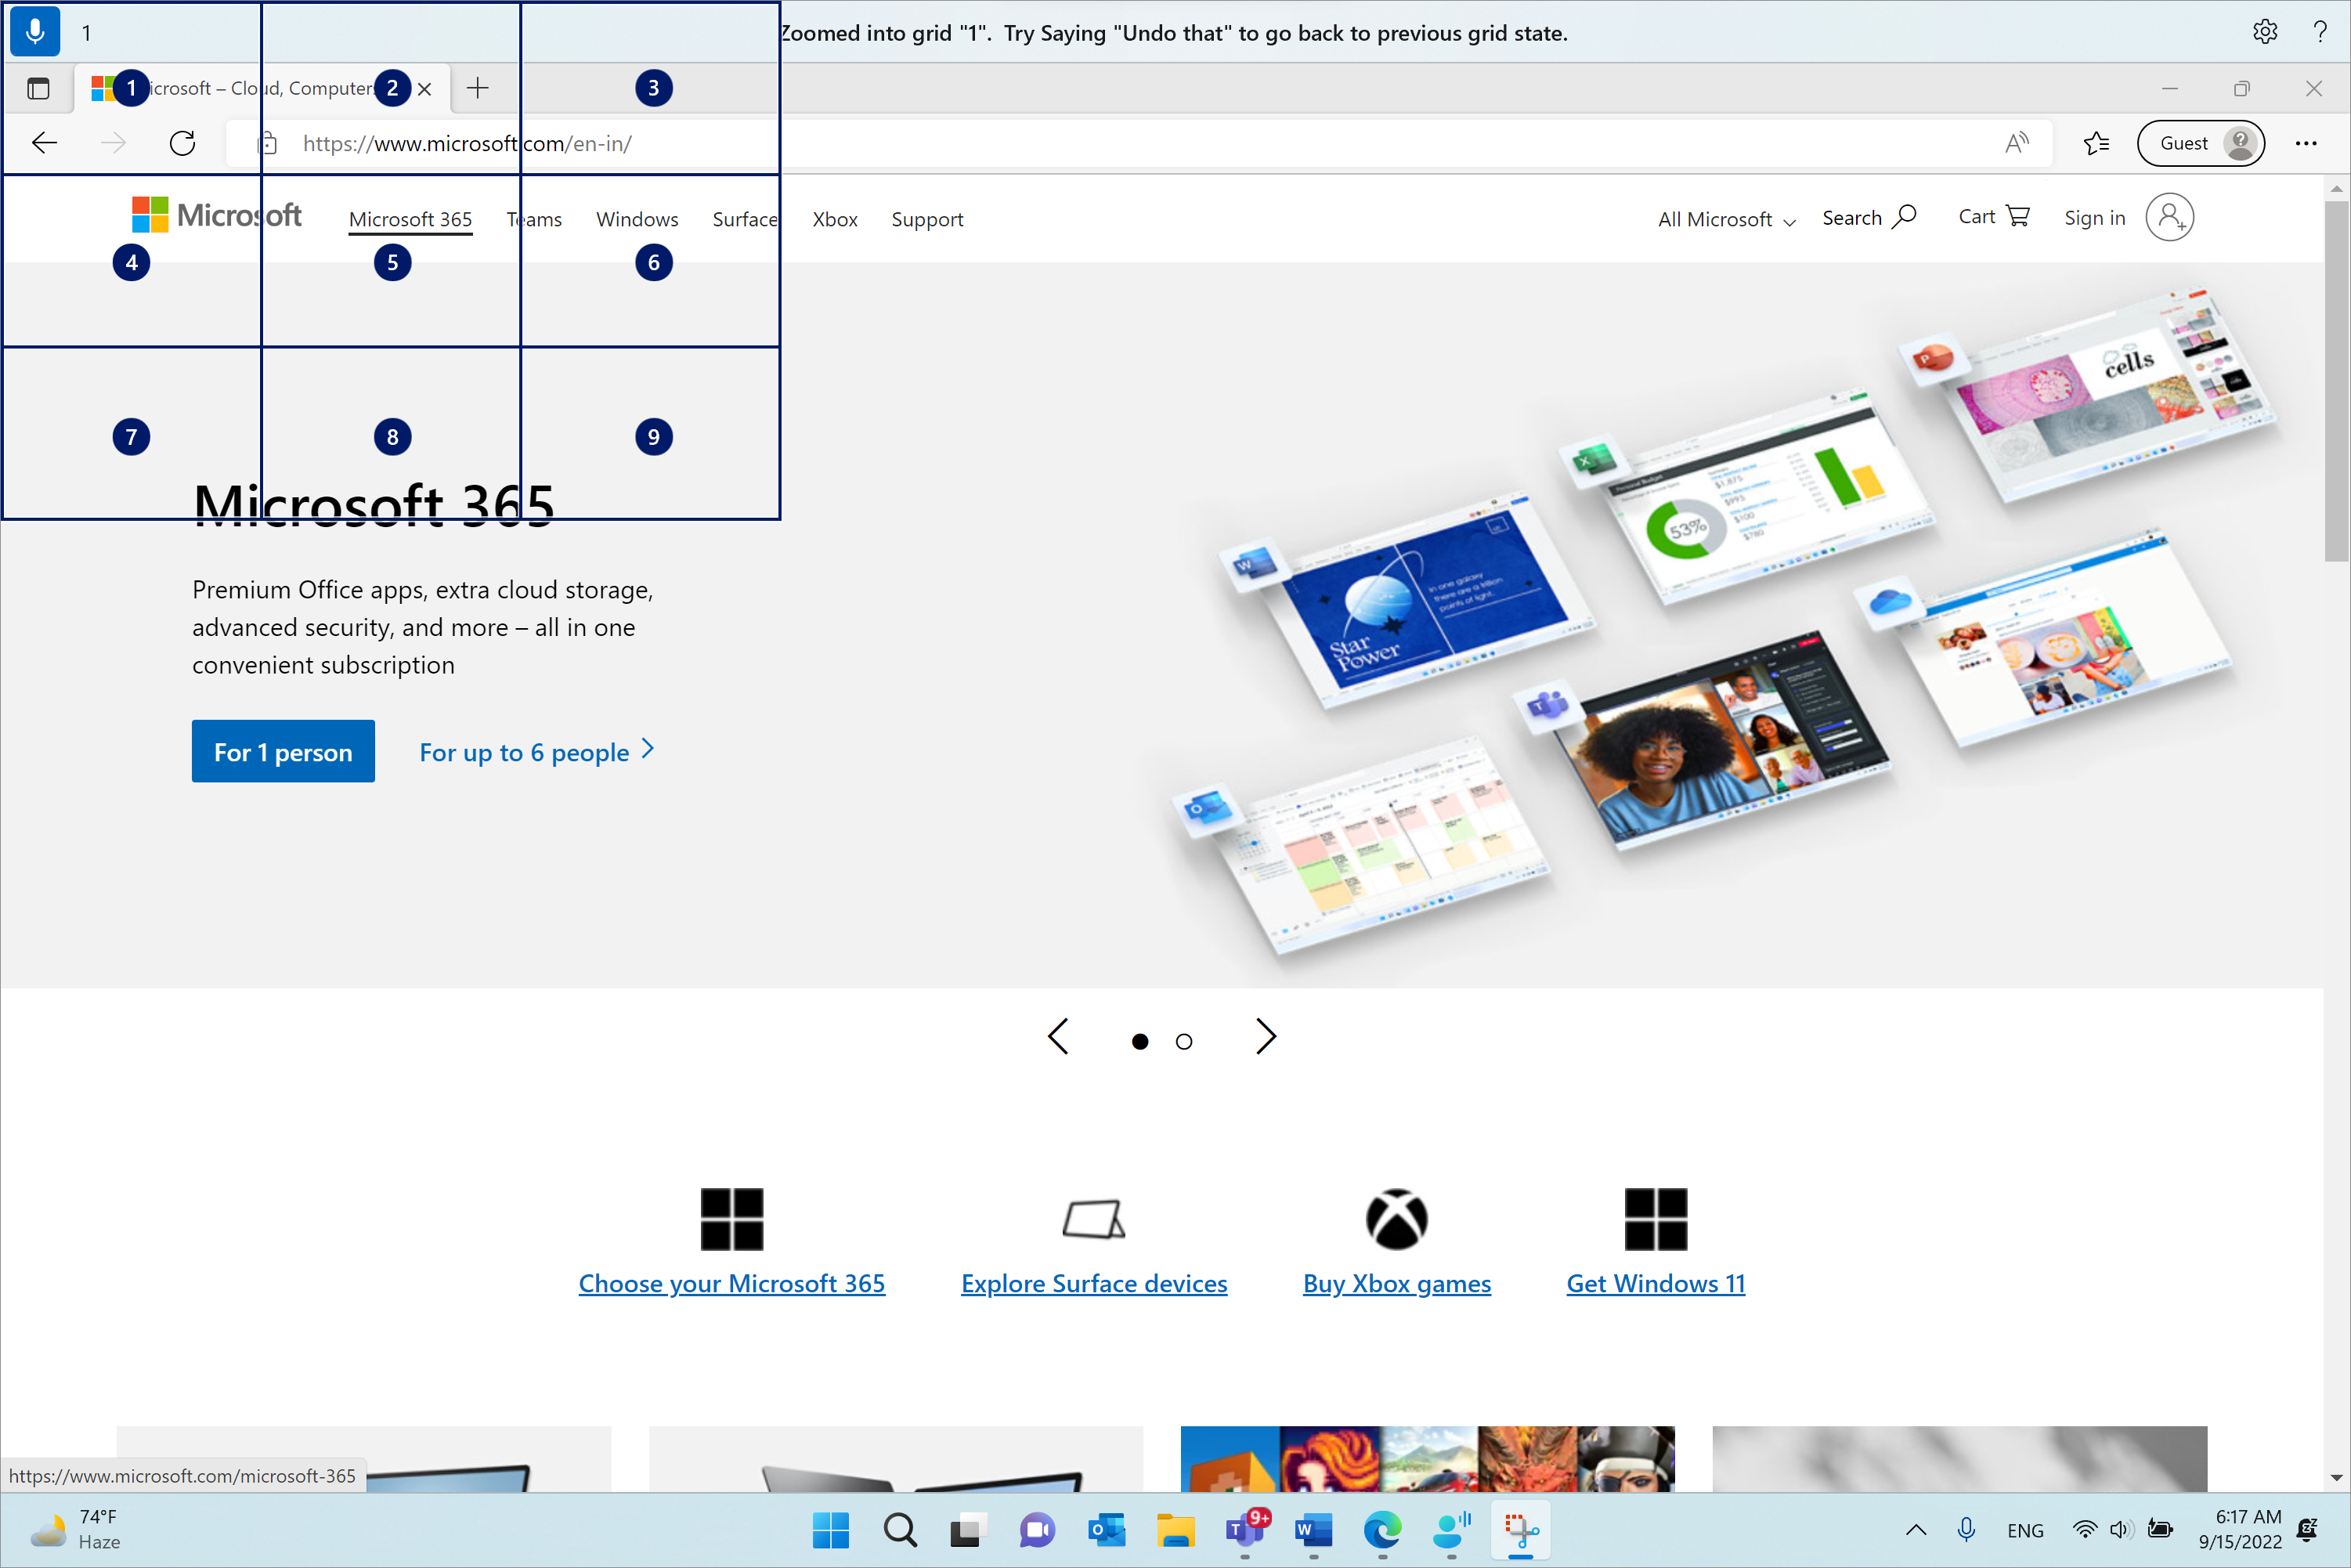 Microsoft Edge on avoinna ja Microsoft.com sivulla. Äänipalkki on päällä ja kuuntelutilassa. Annettu komento on "1" ja näytetty palaute on "Zoomattu ruudukkoon "1". Yritä sanoa "kumoa se", jos haluat palata edelliseen ruudukkotilaan."